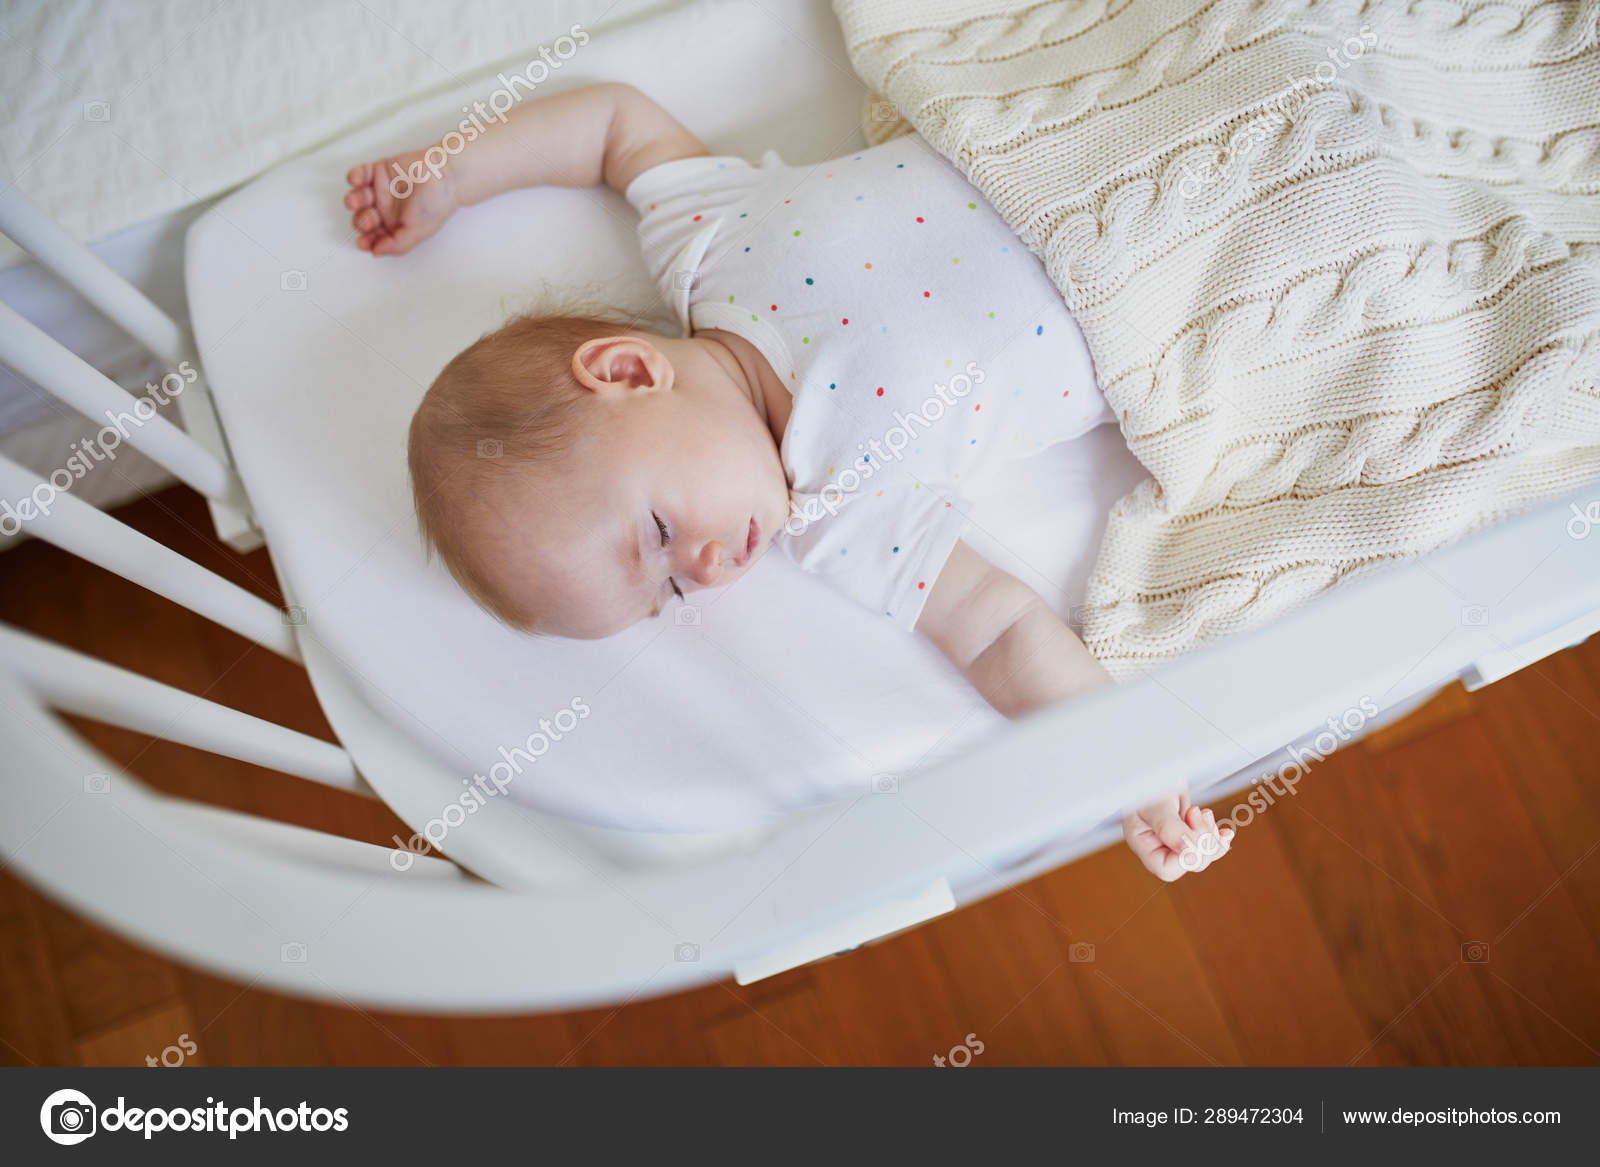 baby sleeping cot